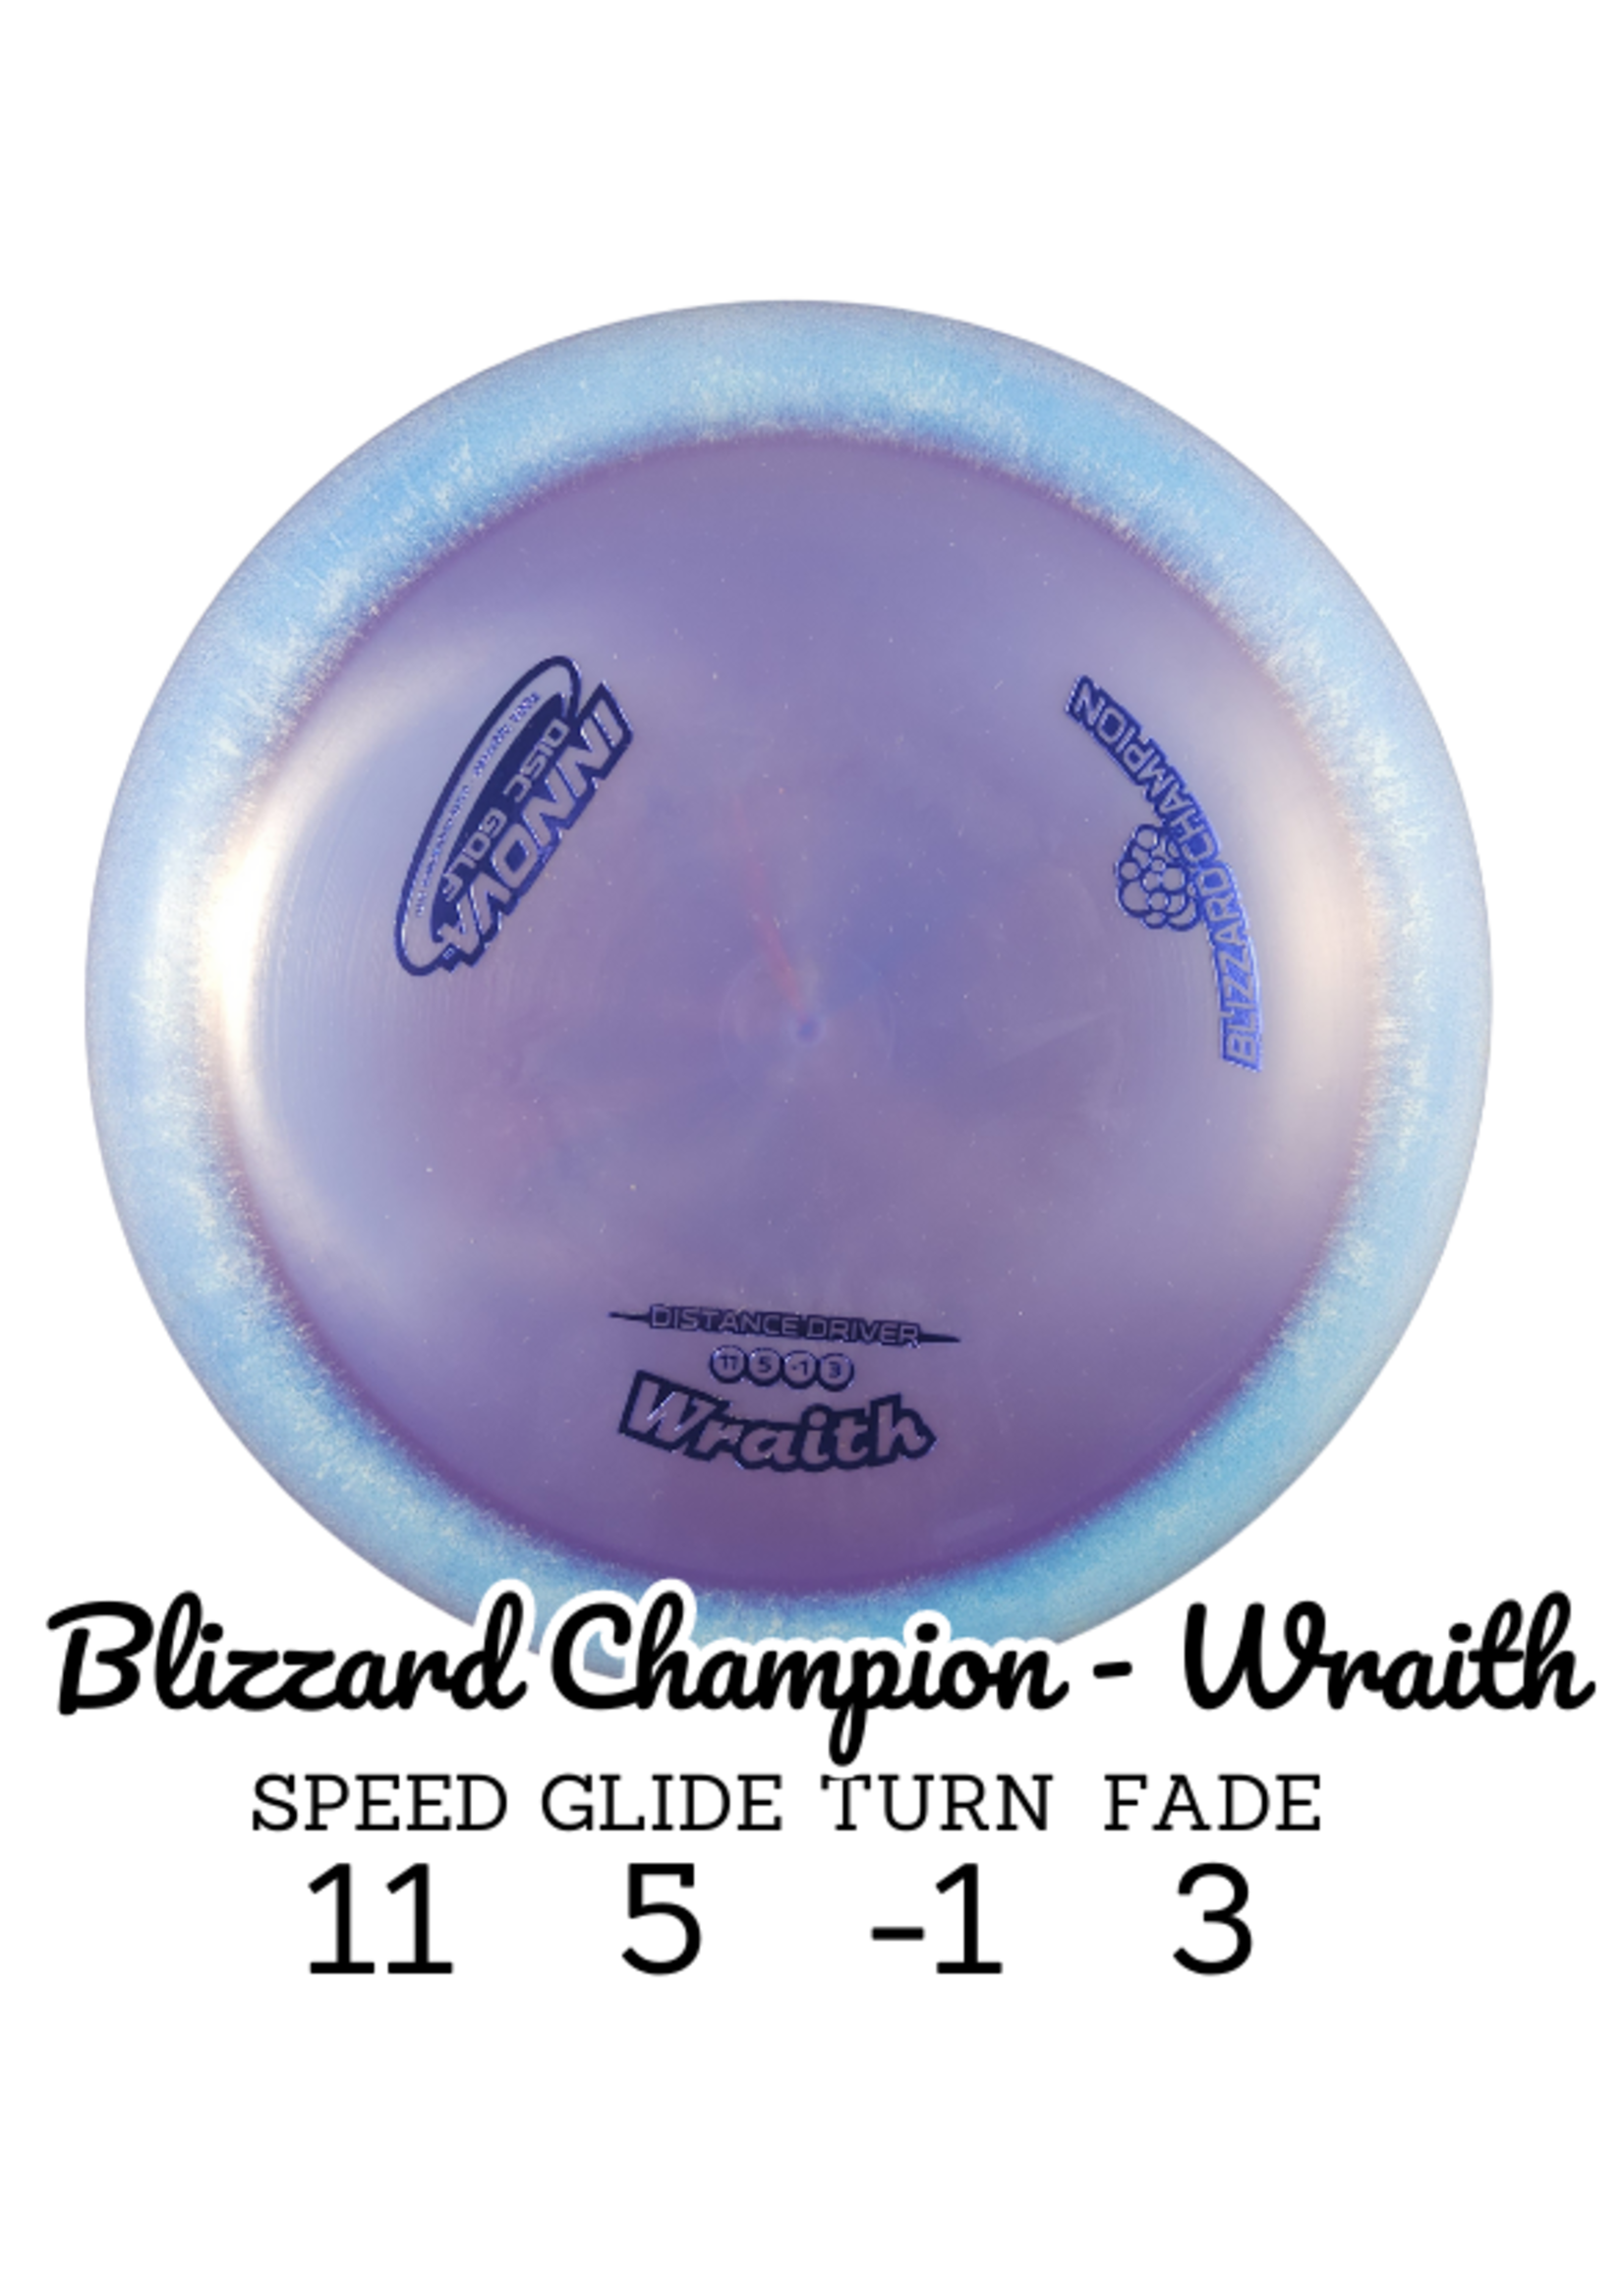 Innova Innova Blizzard Champion WRAITH